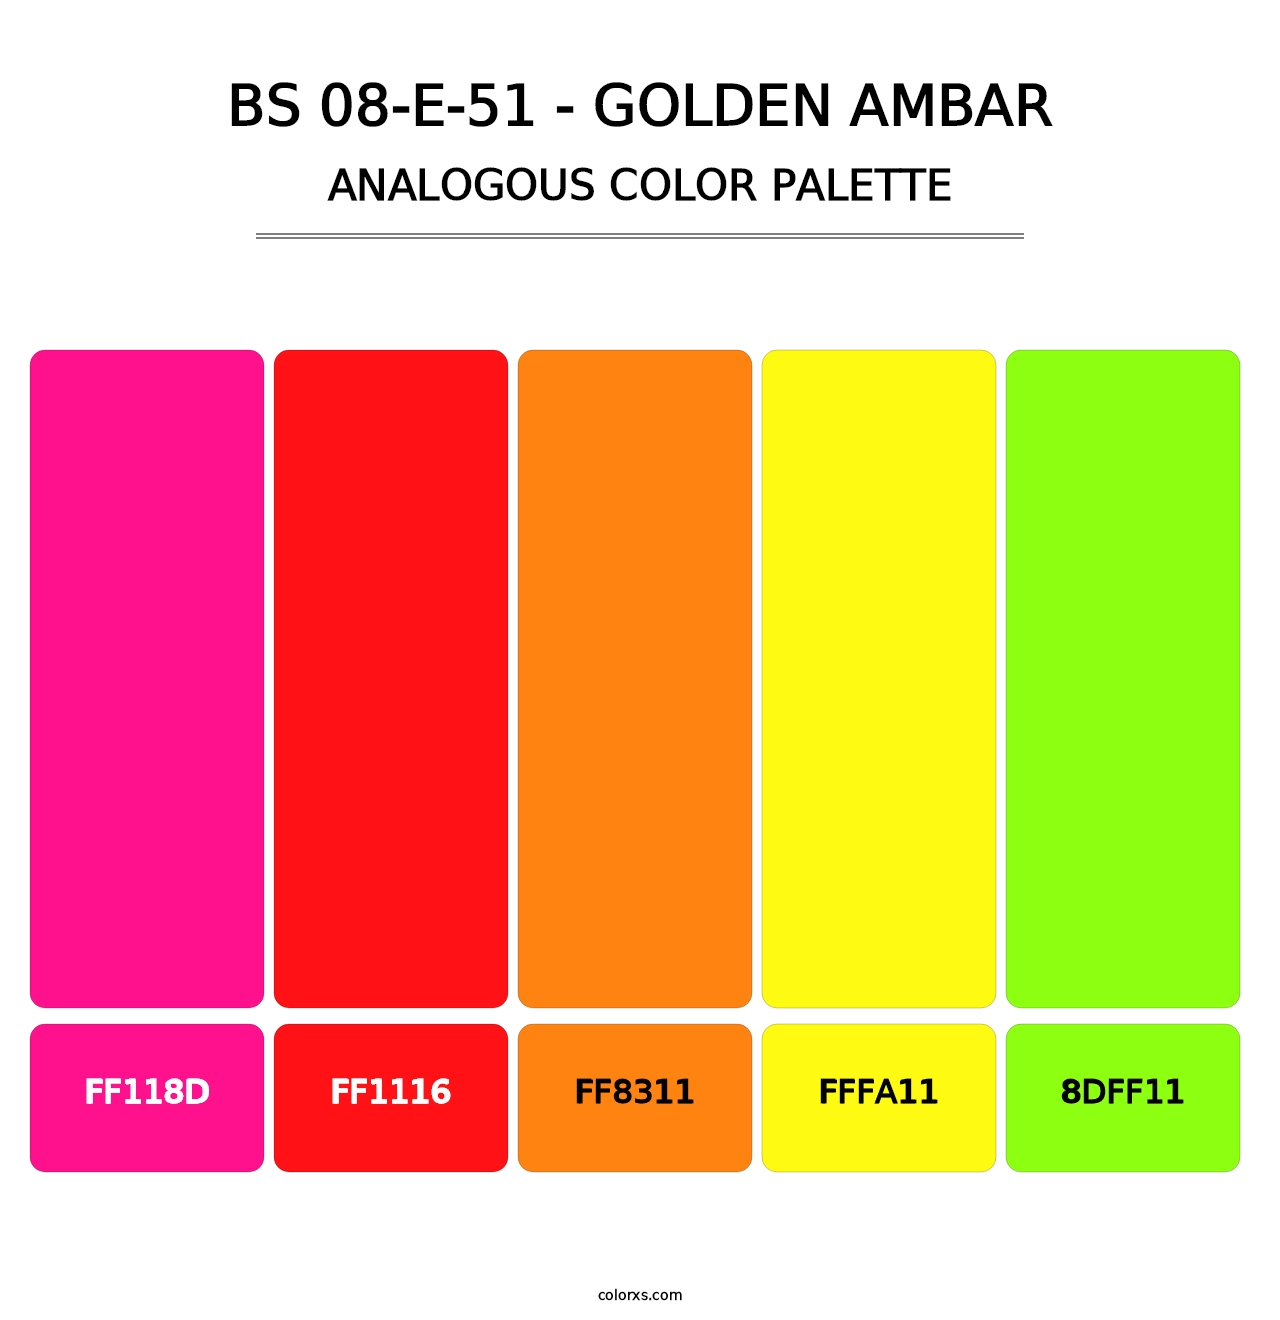 BS 08-E-51 - Golden Ambar - Analogous Color Palette